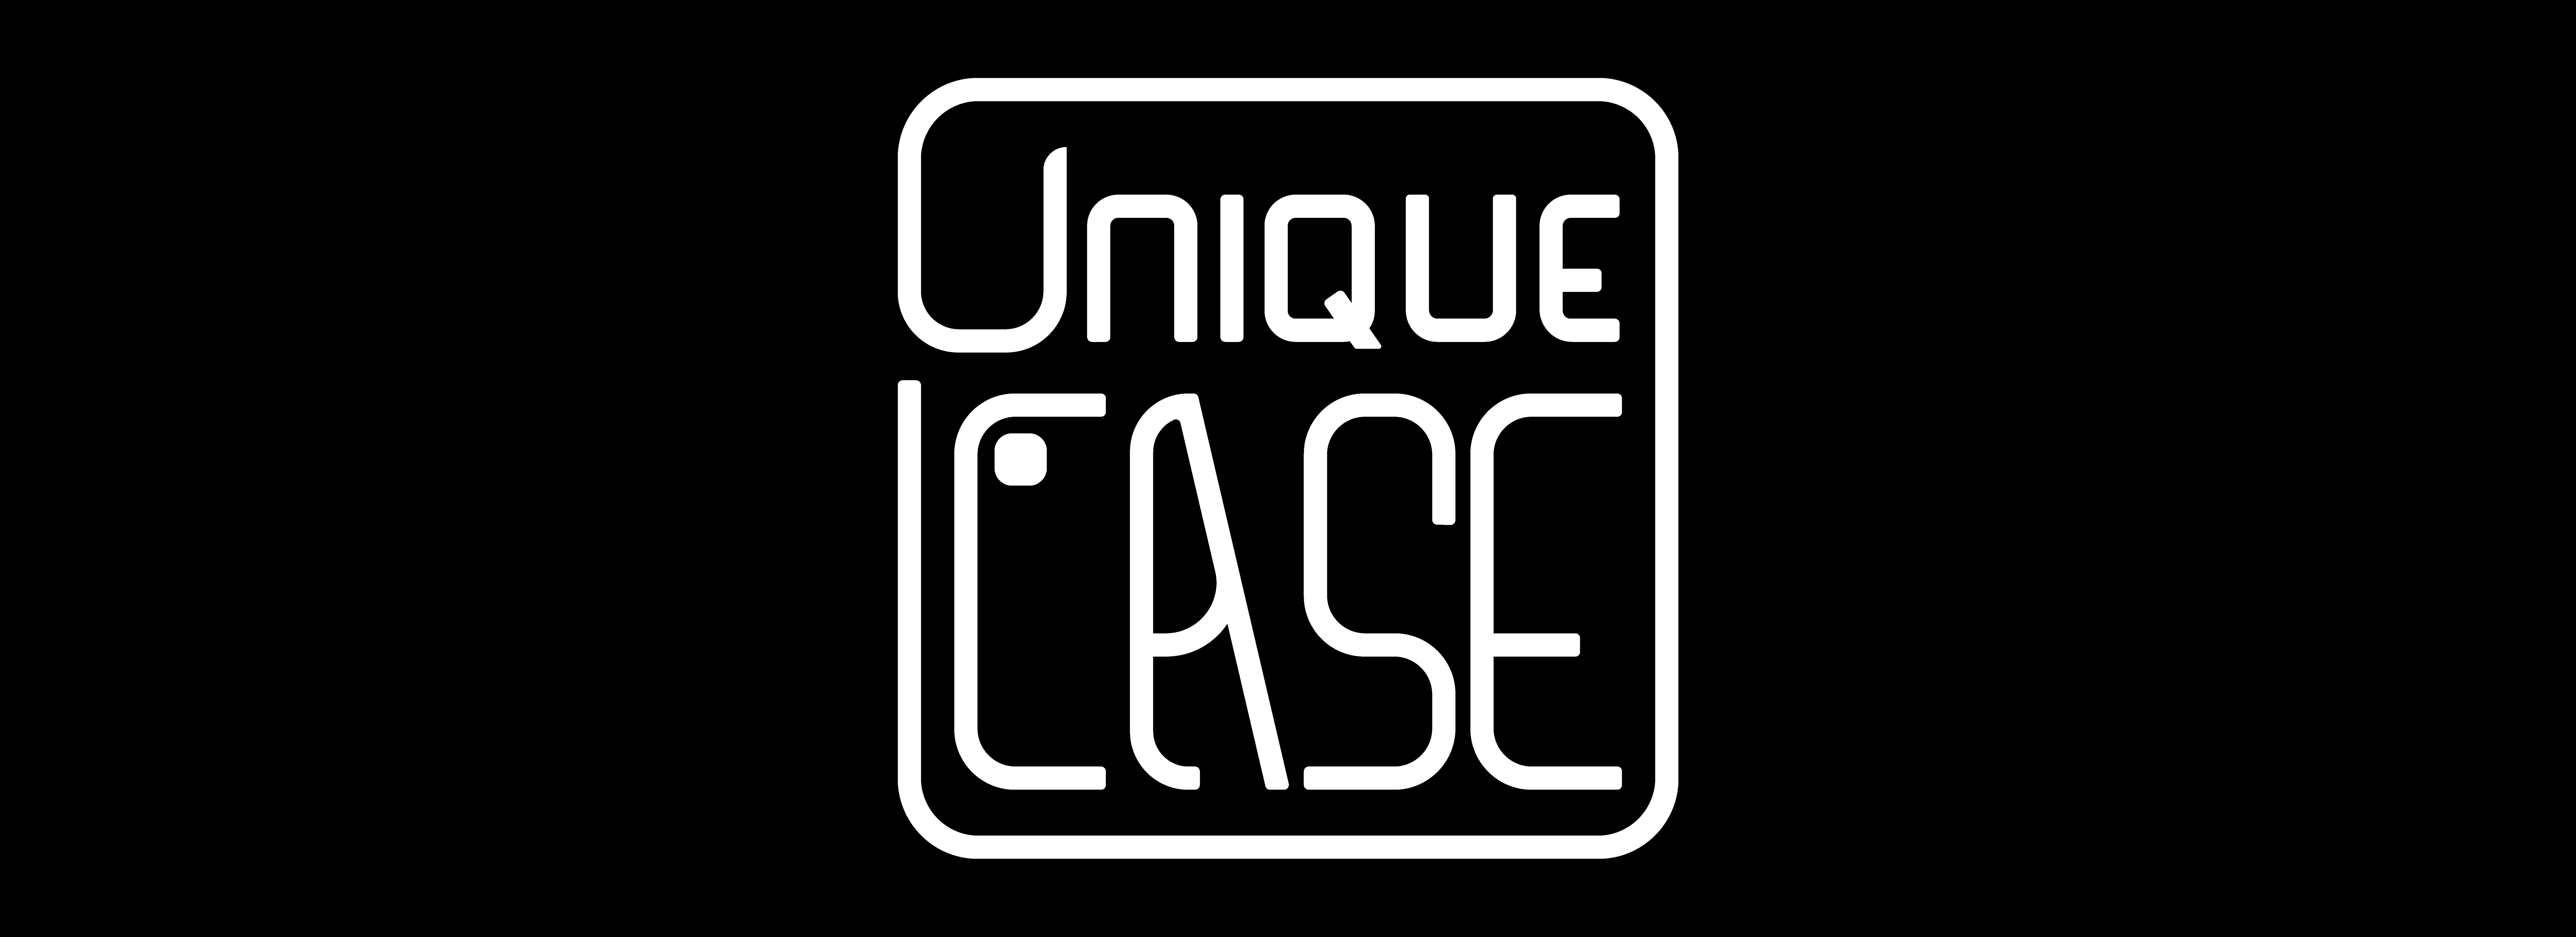 Unique Case